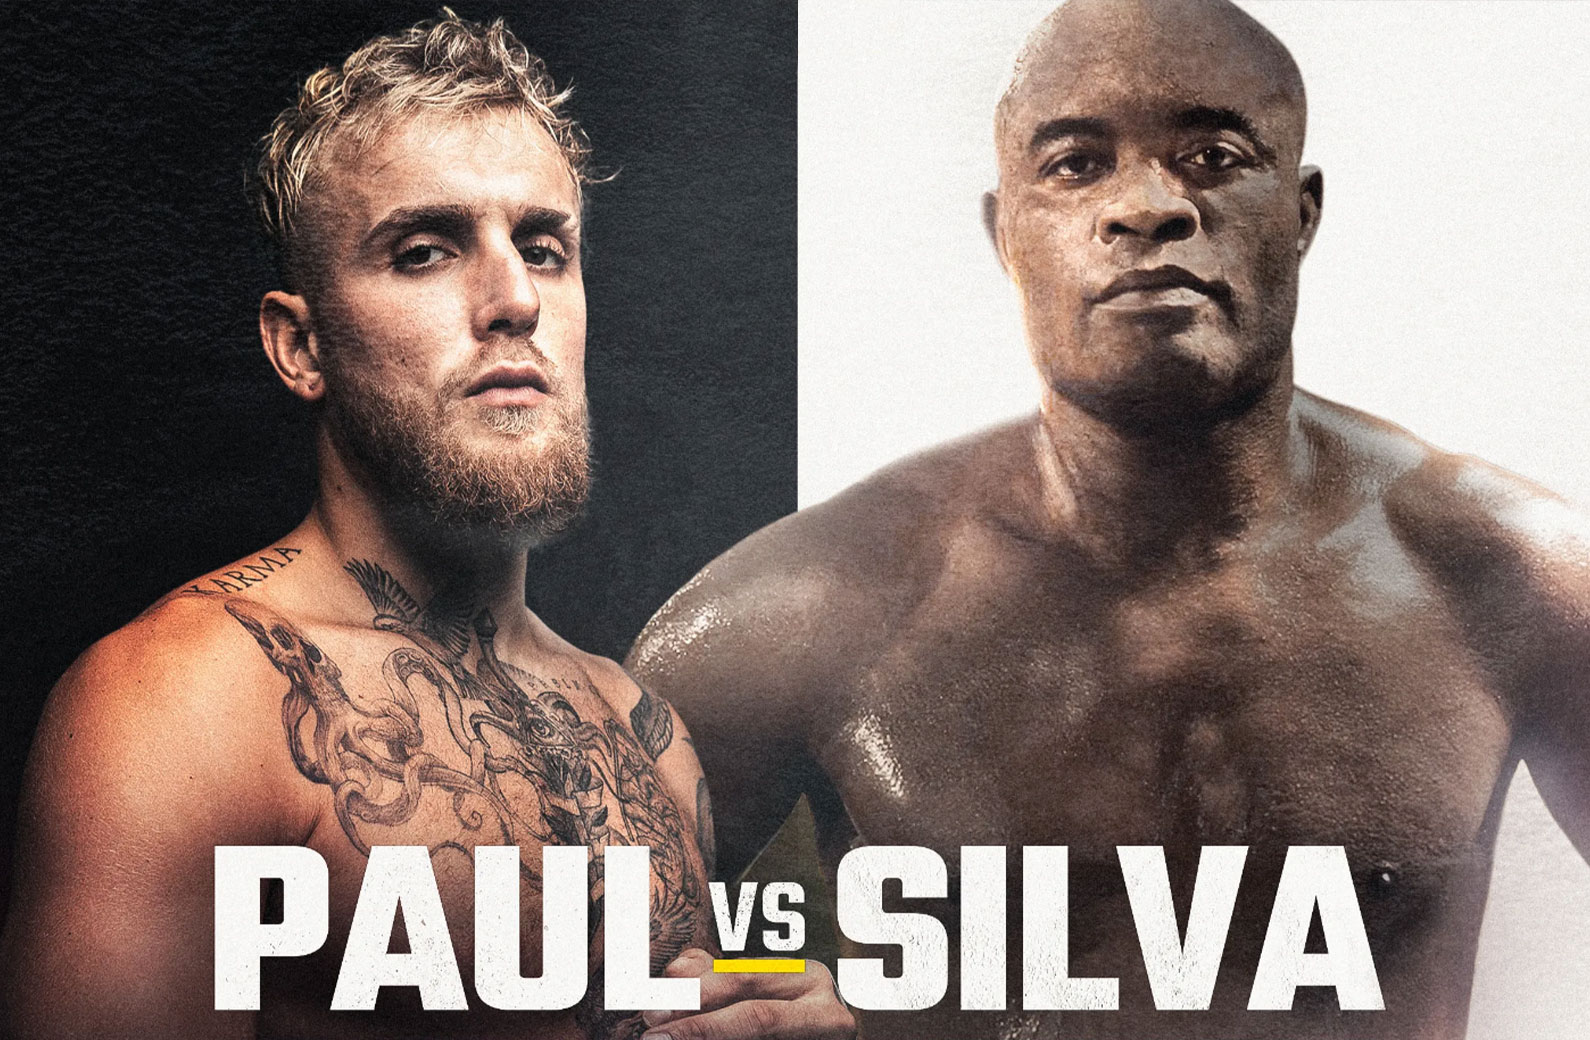 Jake Paul faces UFC legend Anderson Silva